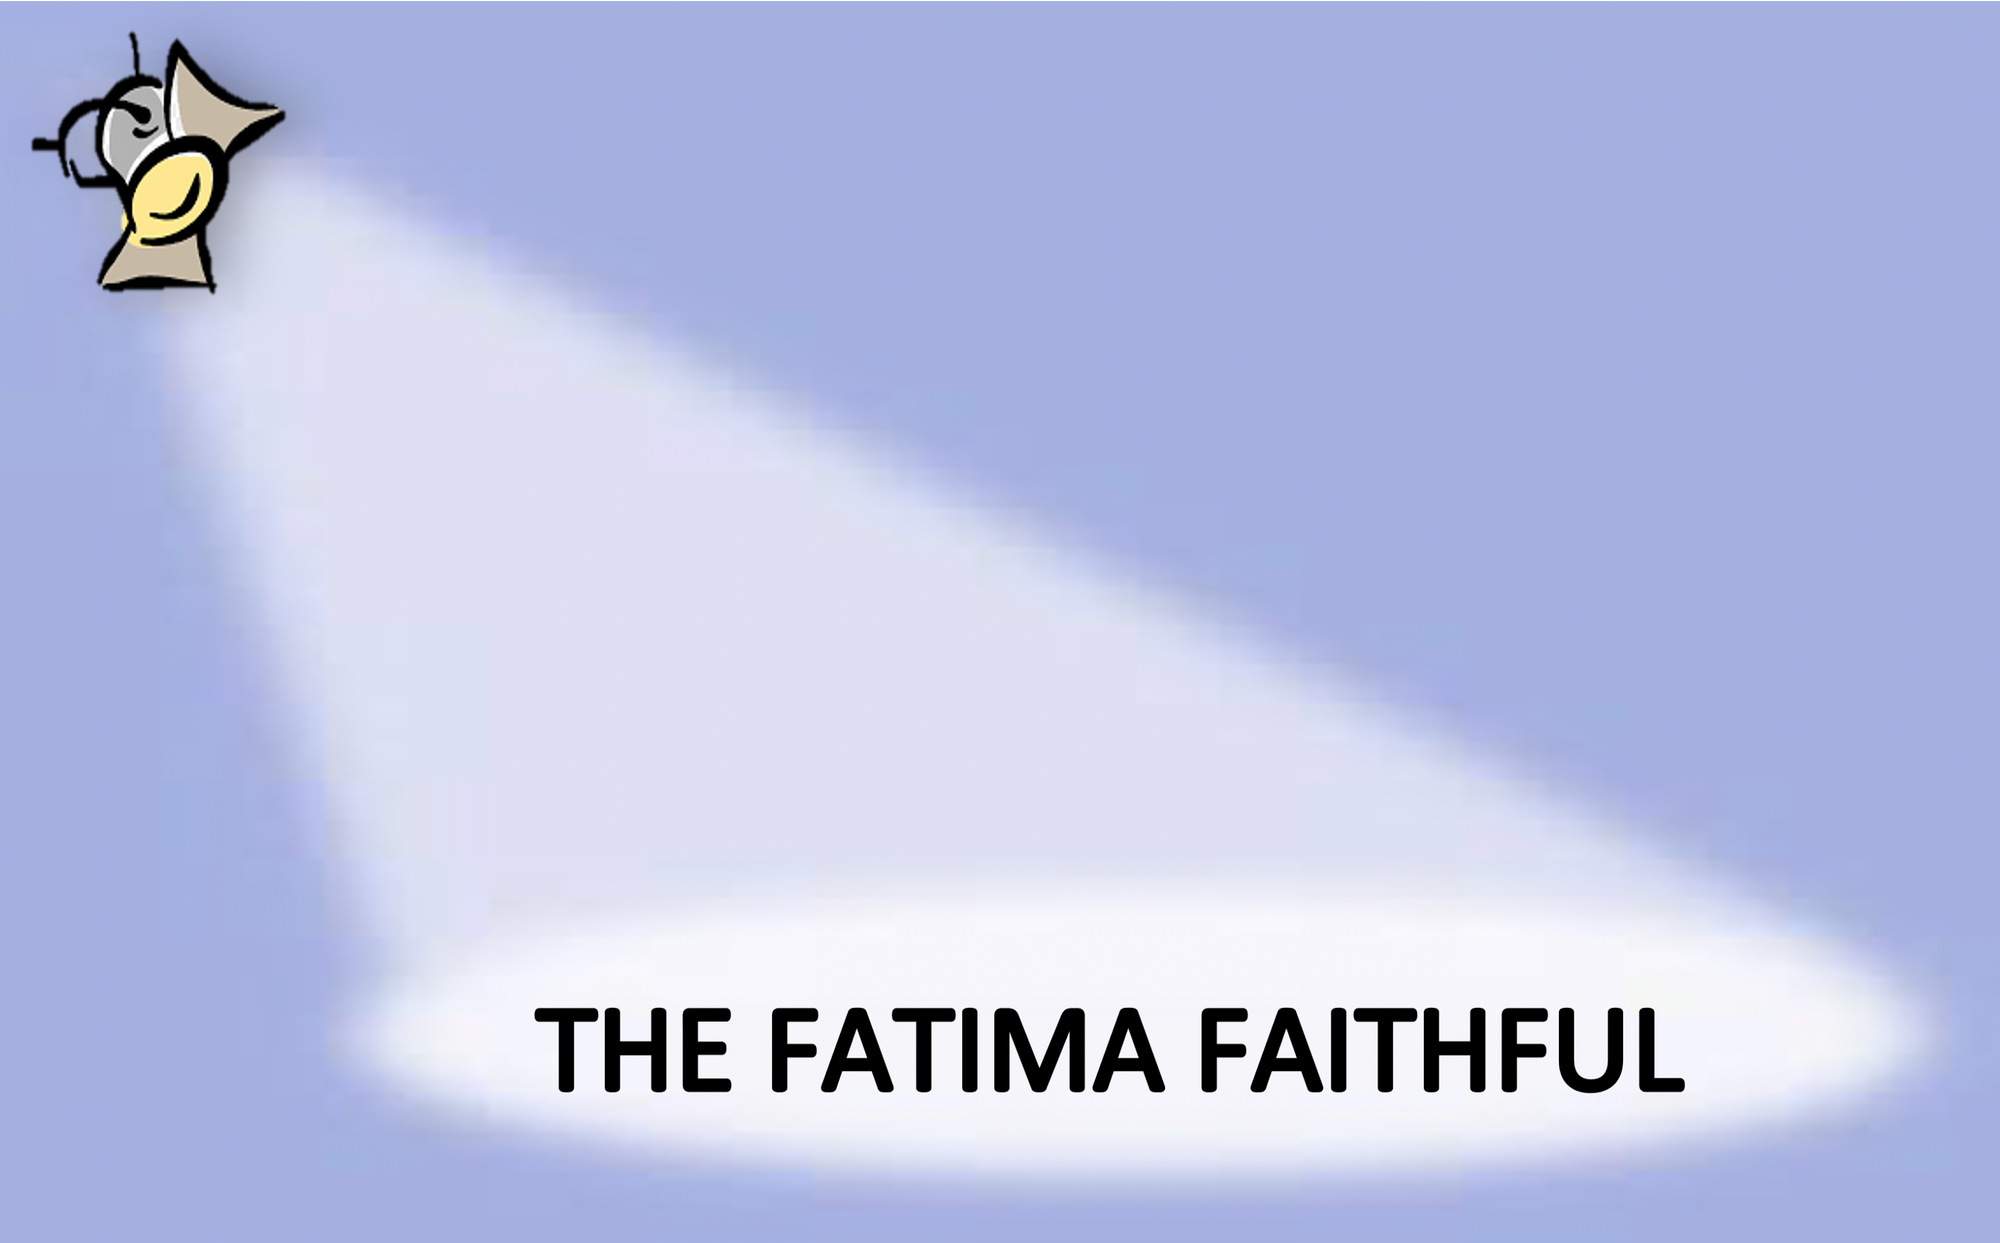 The Fatima Faithful for October 2020